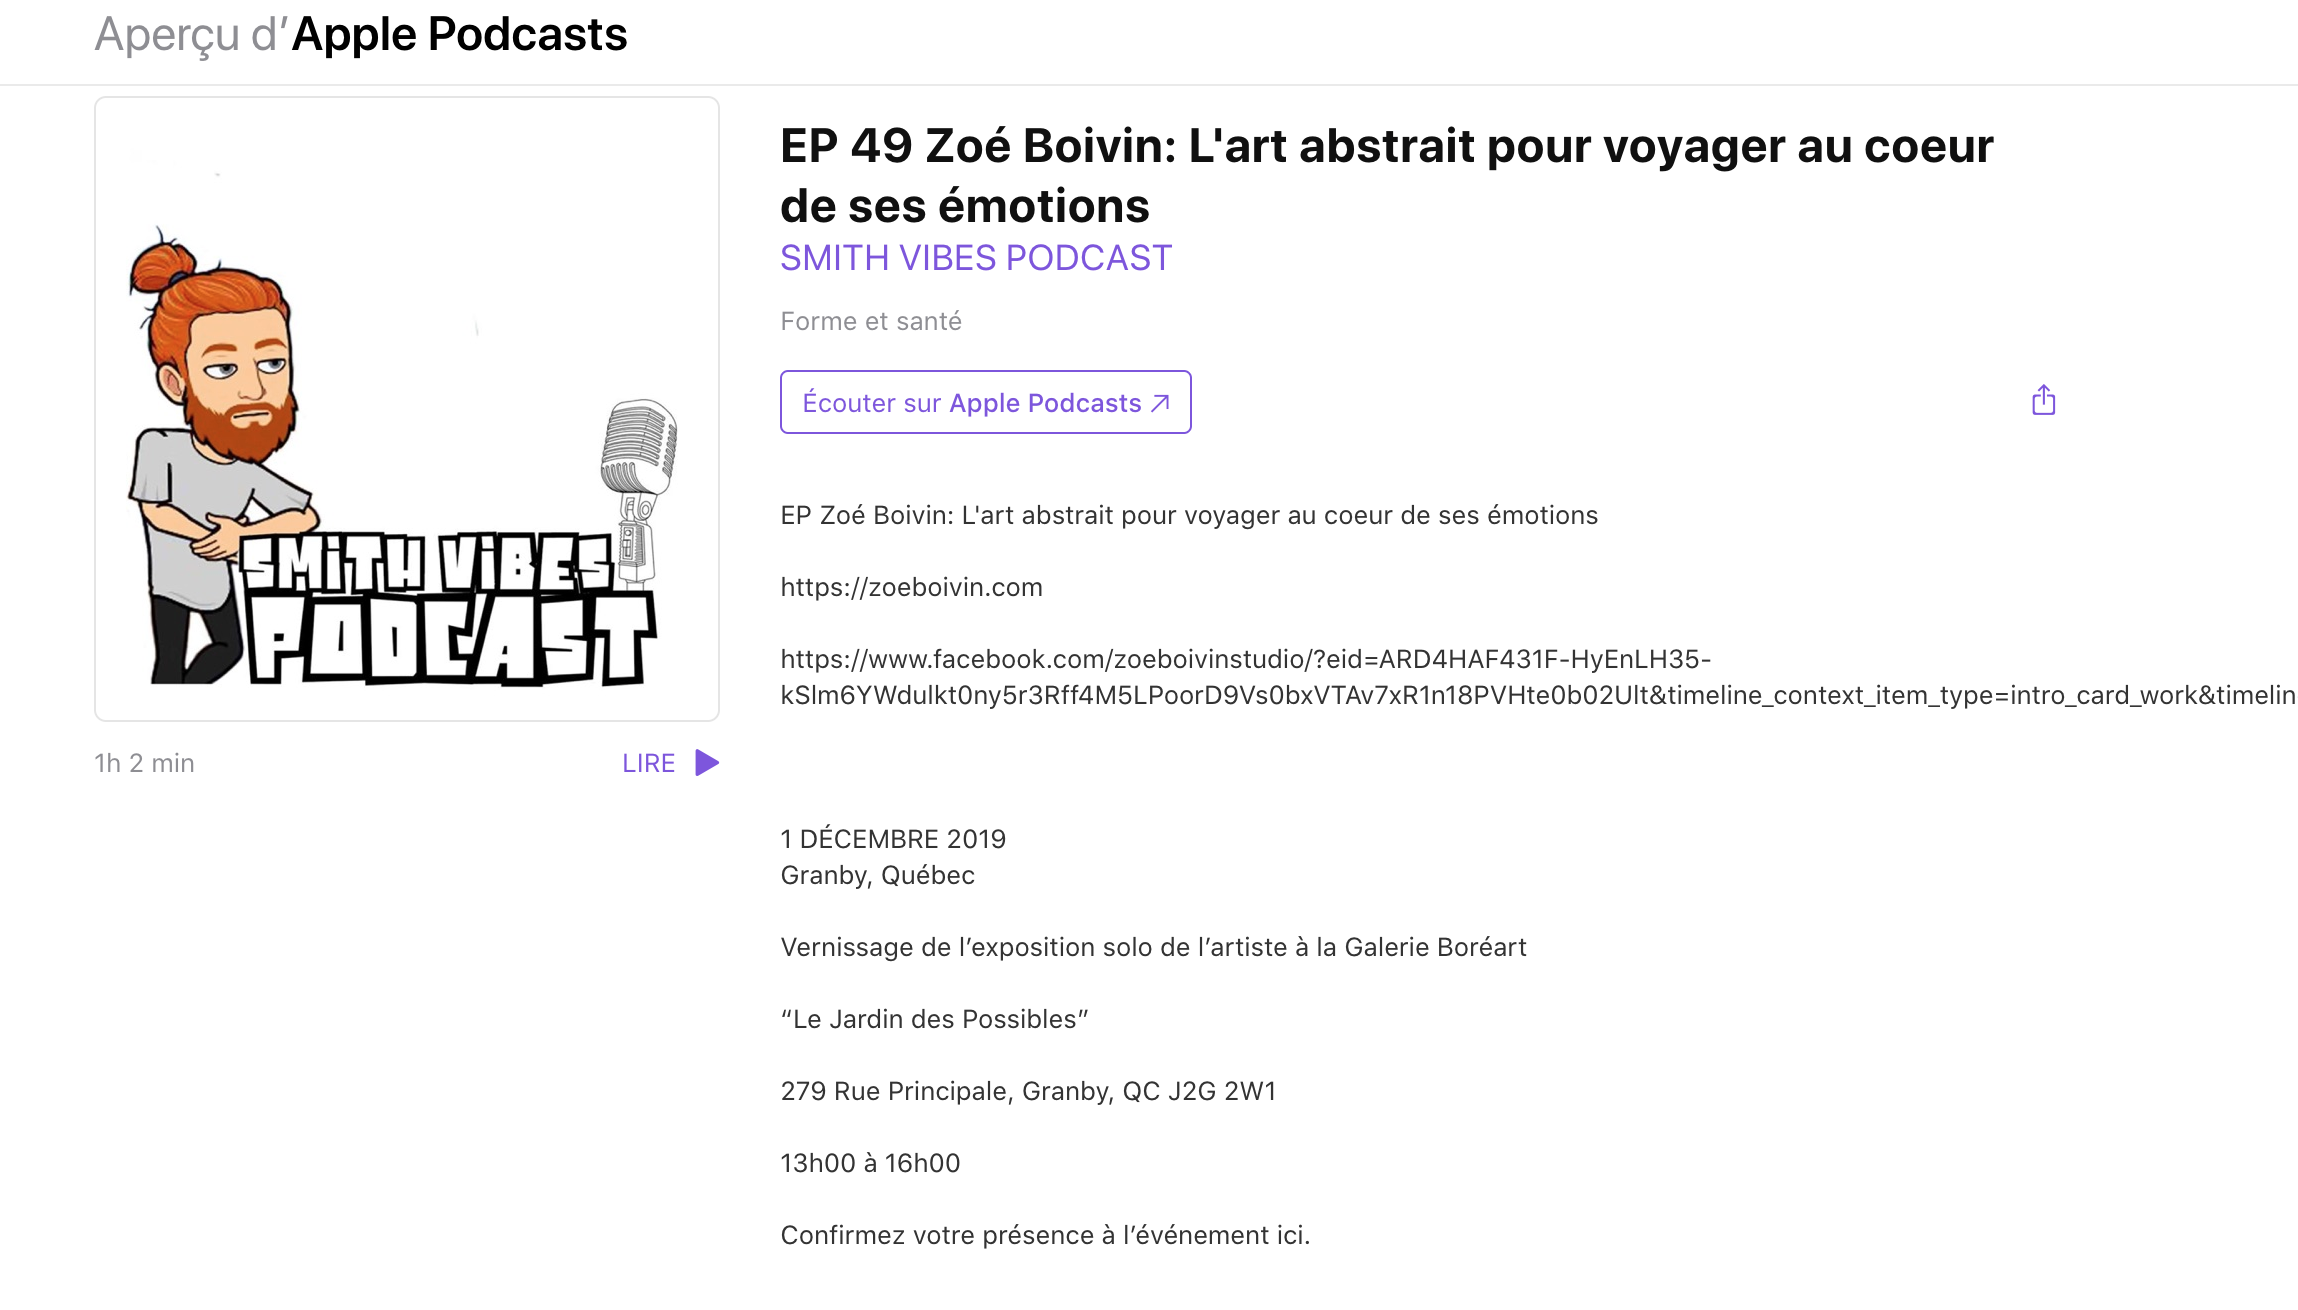  Zoé Boivin : L’art abstrait pour voyager au coeur de ses émotions. Guillaume Lafleur-Smith.  Smith Vibes Podcast (EP 49) , 21 novembre 2019. L’épisode complet  ici.  